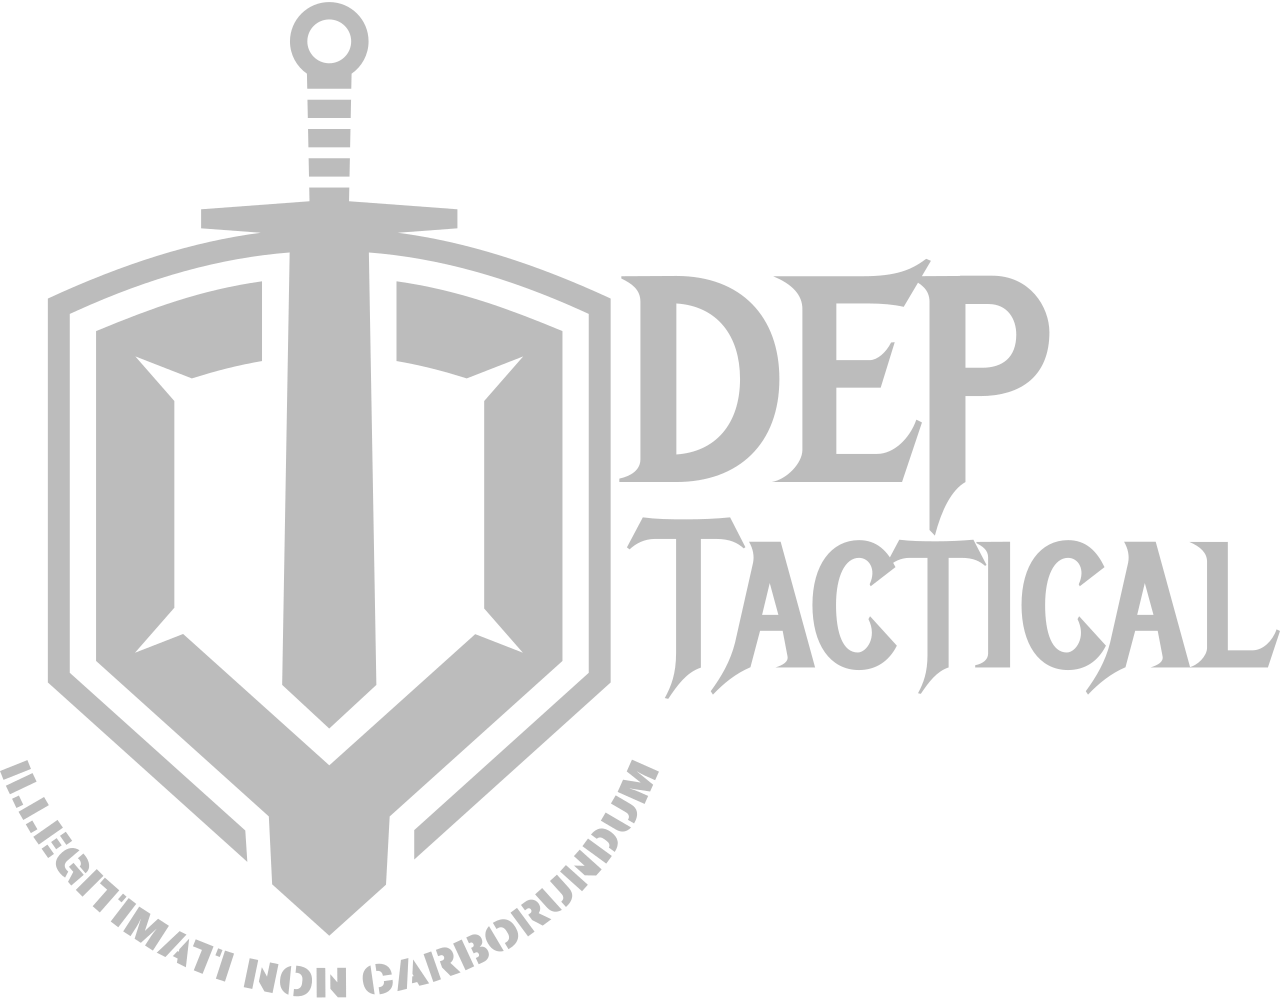 DEP 's logo